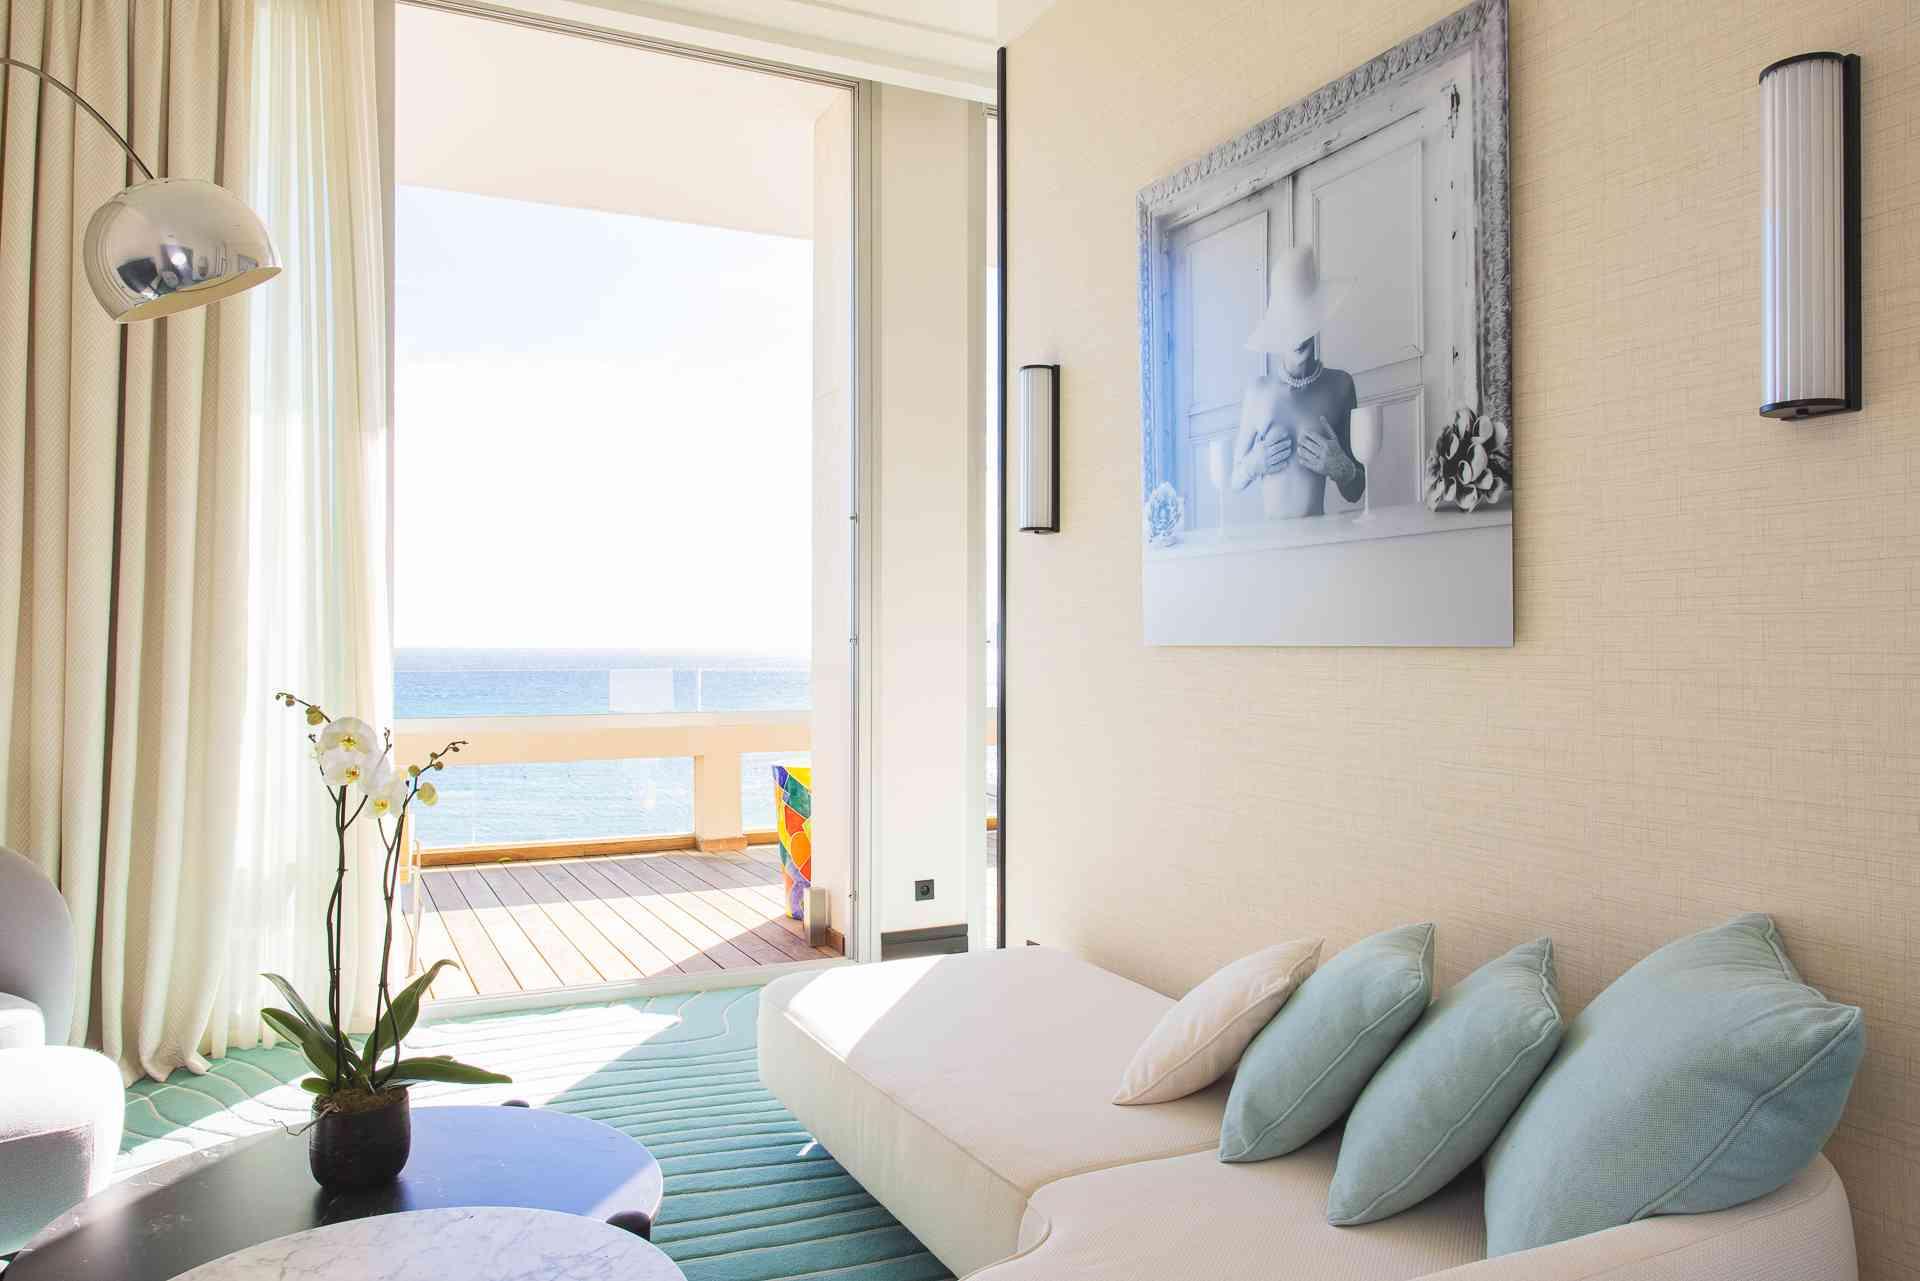 Bright suite overlooking the ocean